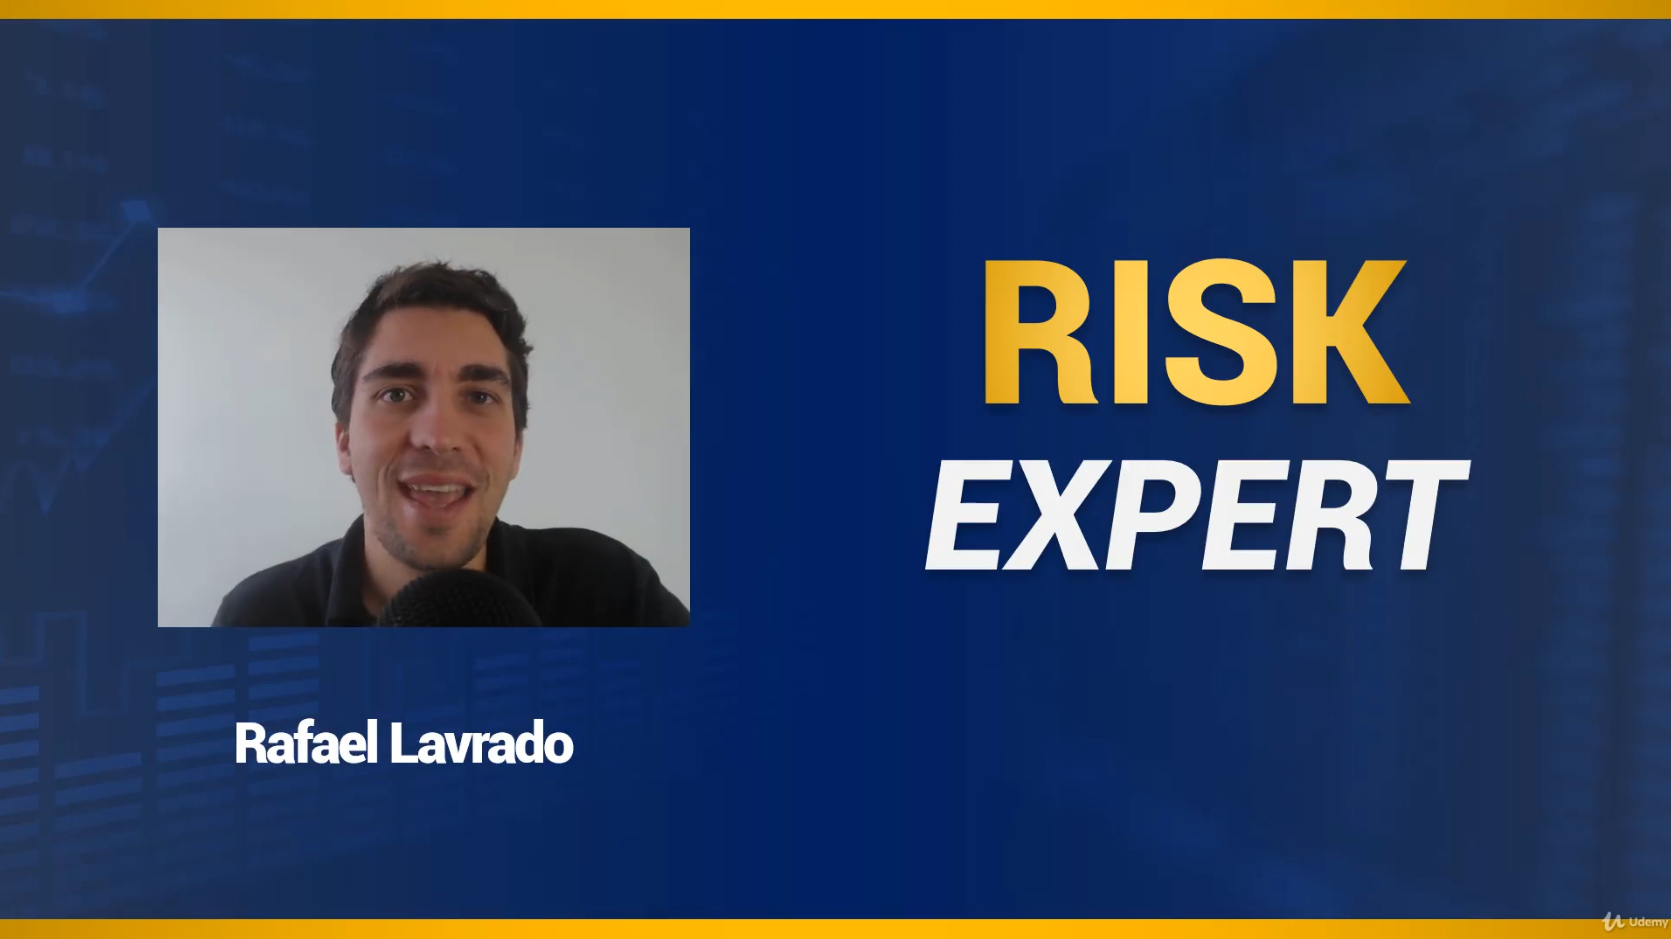 Rafael Lavrado - Risk Expert